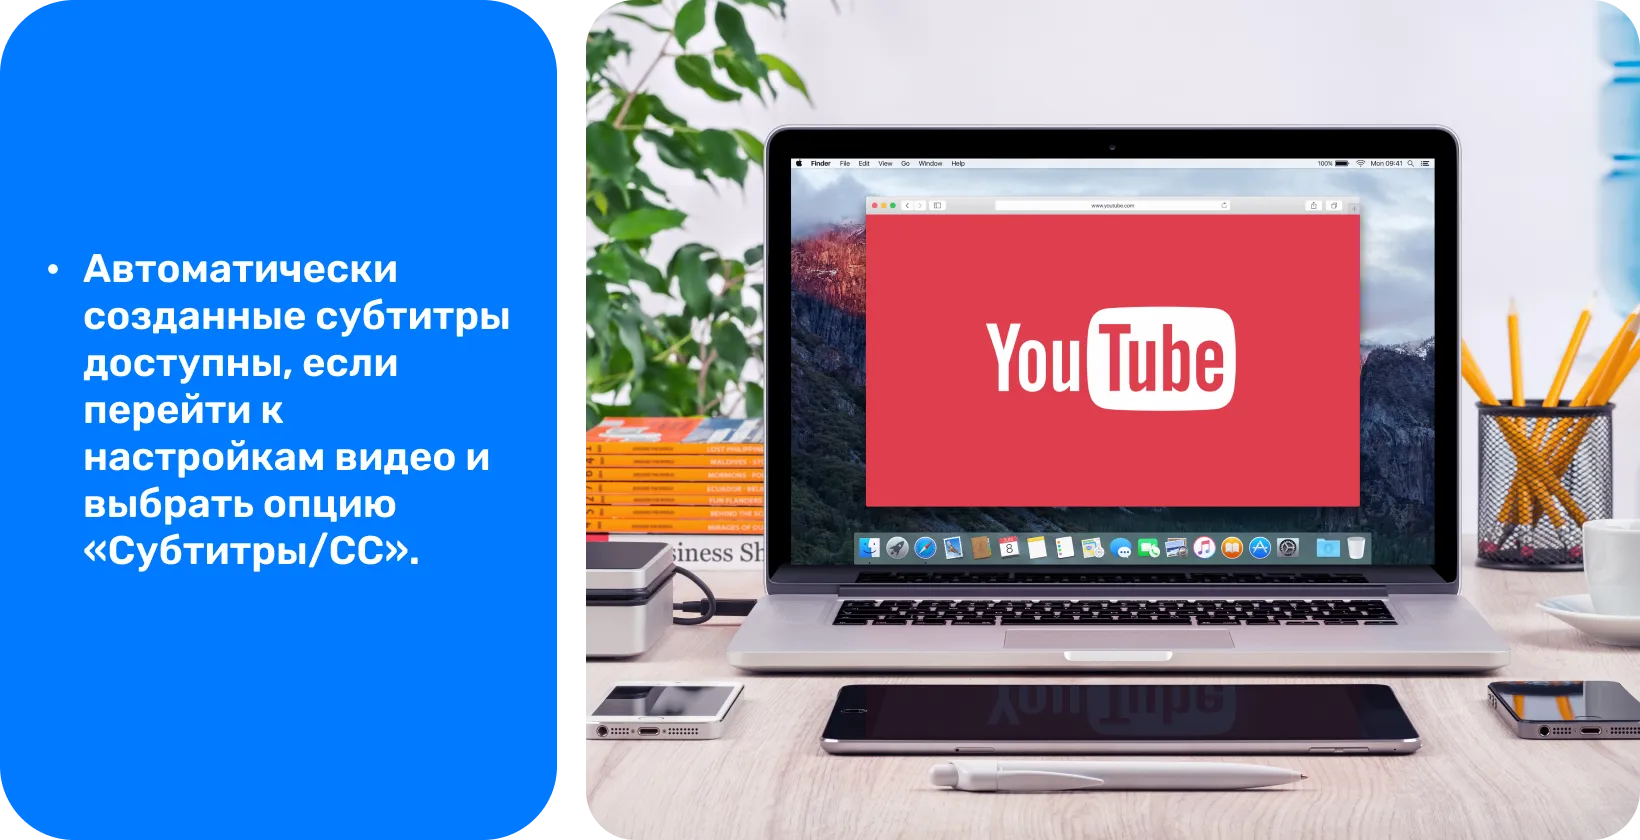 YouTube на экране ноутбука, пропагандируя использование автоматически сгенерированных субтитров для доступности видео и SEO.